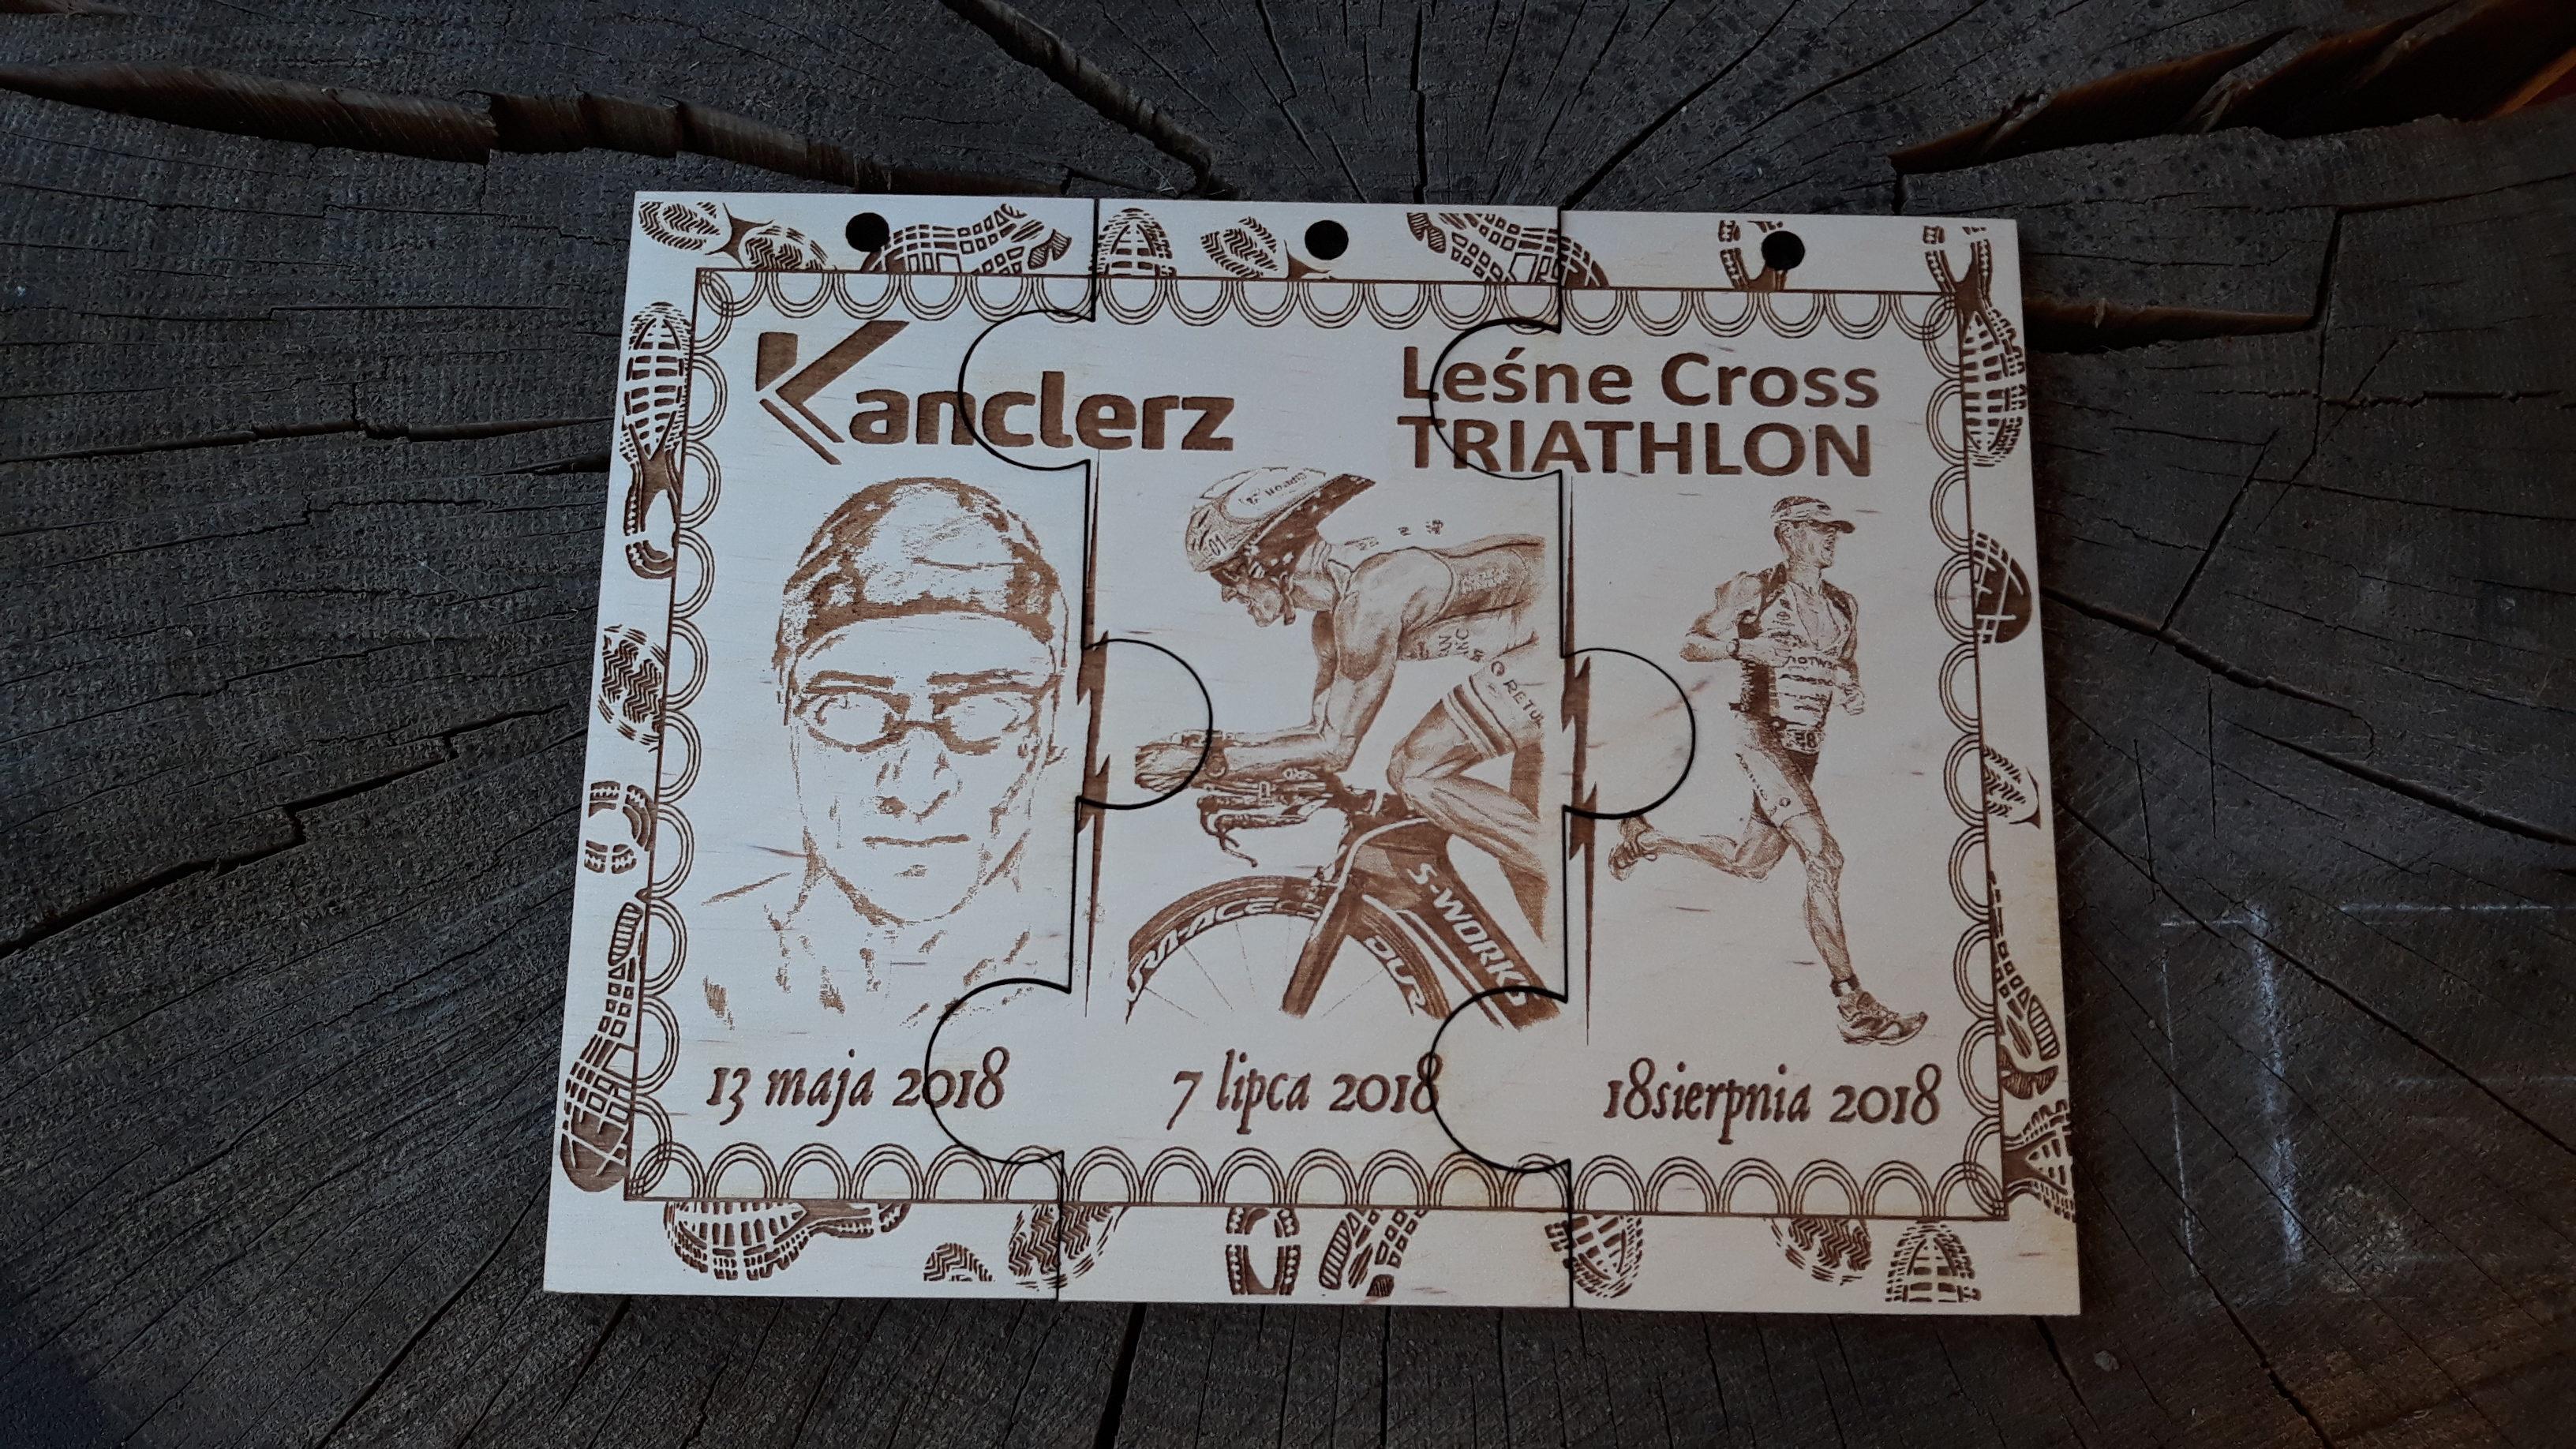 Kanclerz Leśne Cross Triathlon – 3 drewniane medale, składane